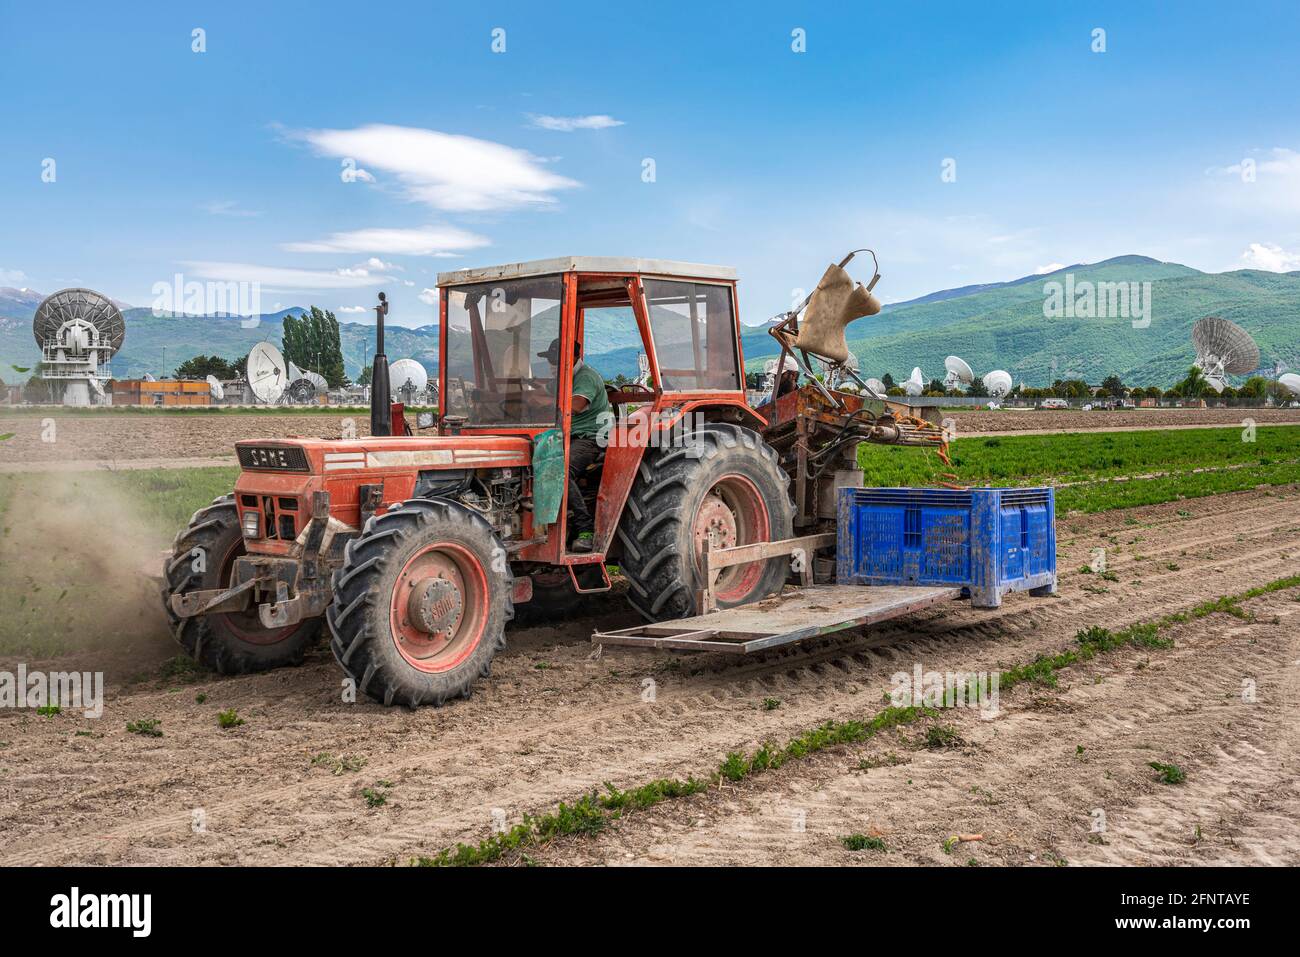 Récolte mécanisée, avec le tracteur, de carottes dans la plaine de Fucino. Fucino, Abruzzes, Italie, Europe Banque D'Images